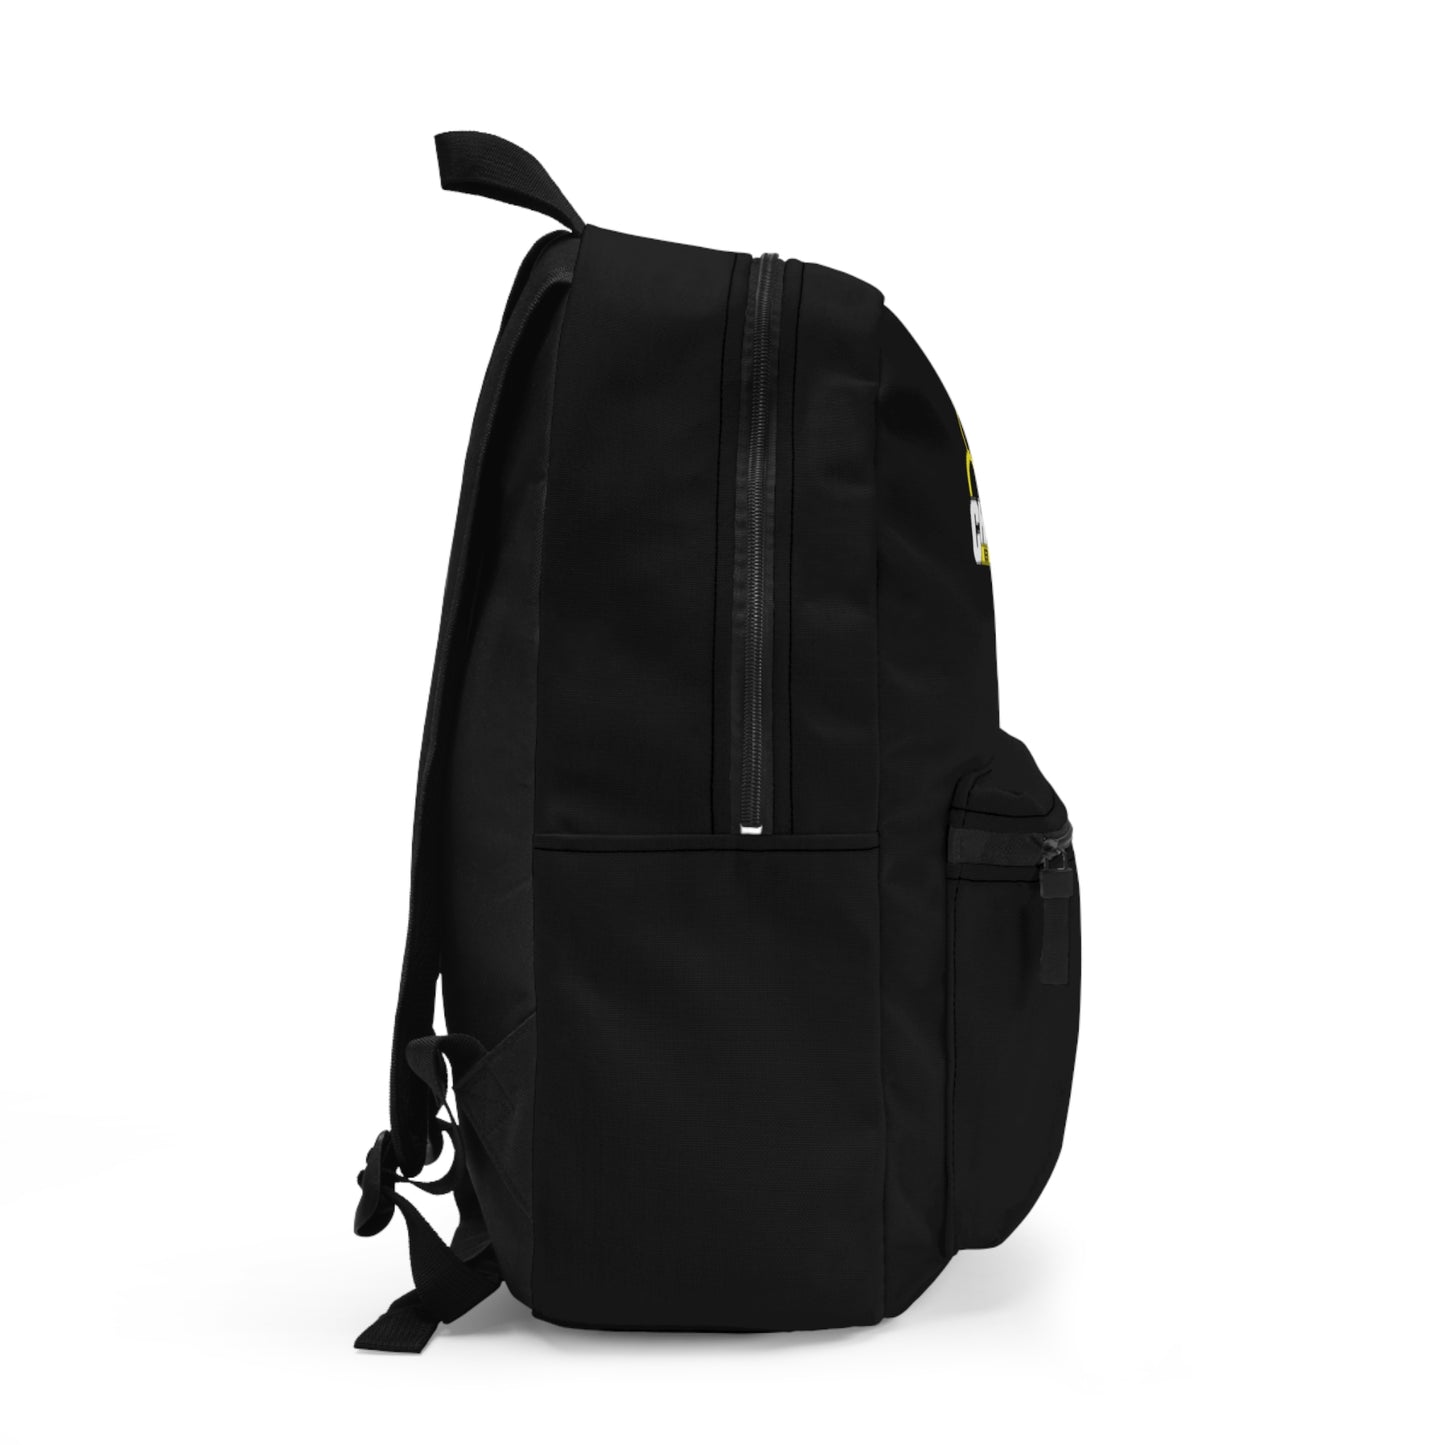 Black BMX Backpack